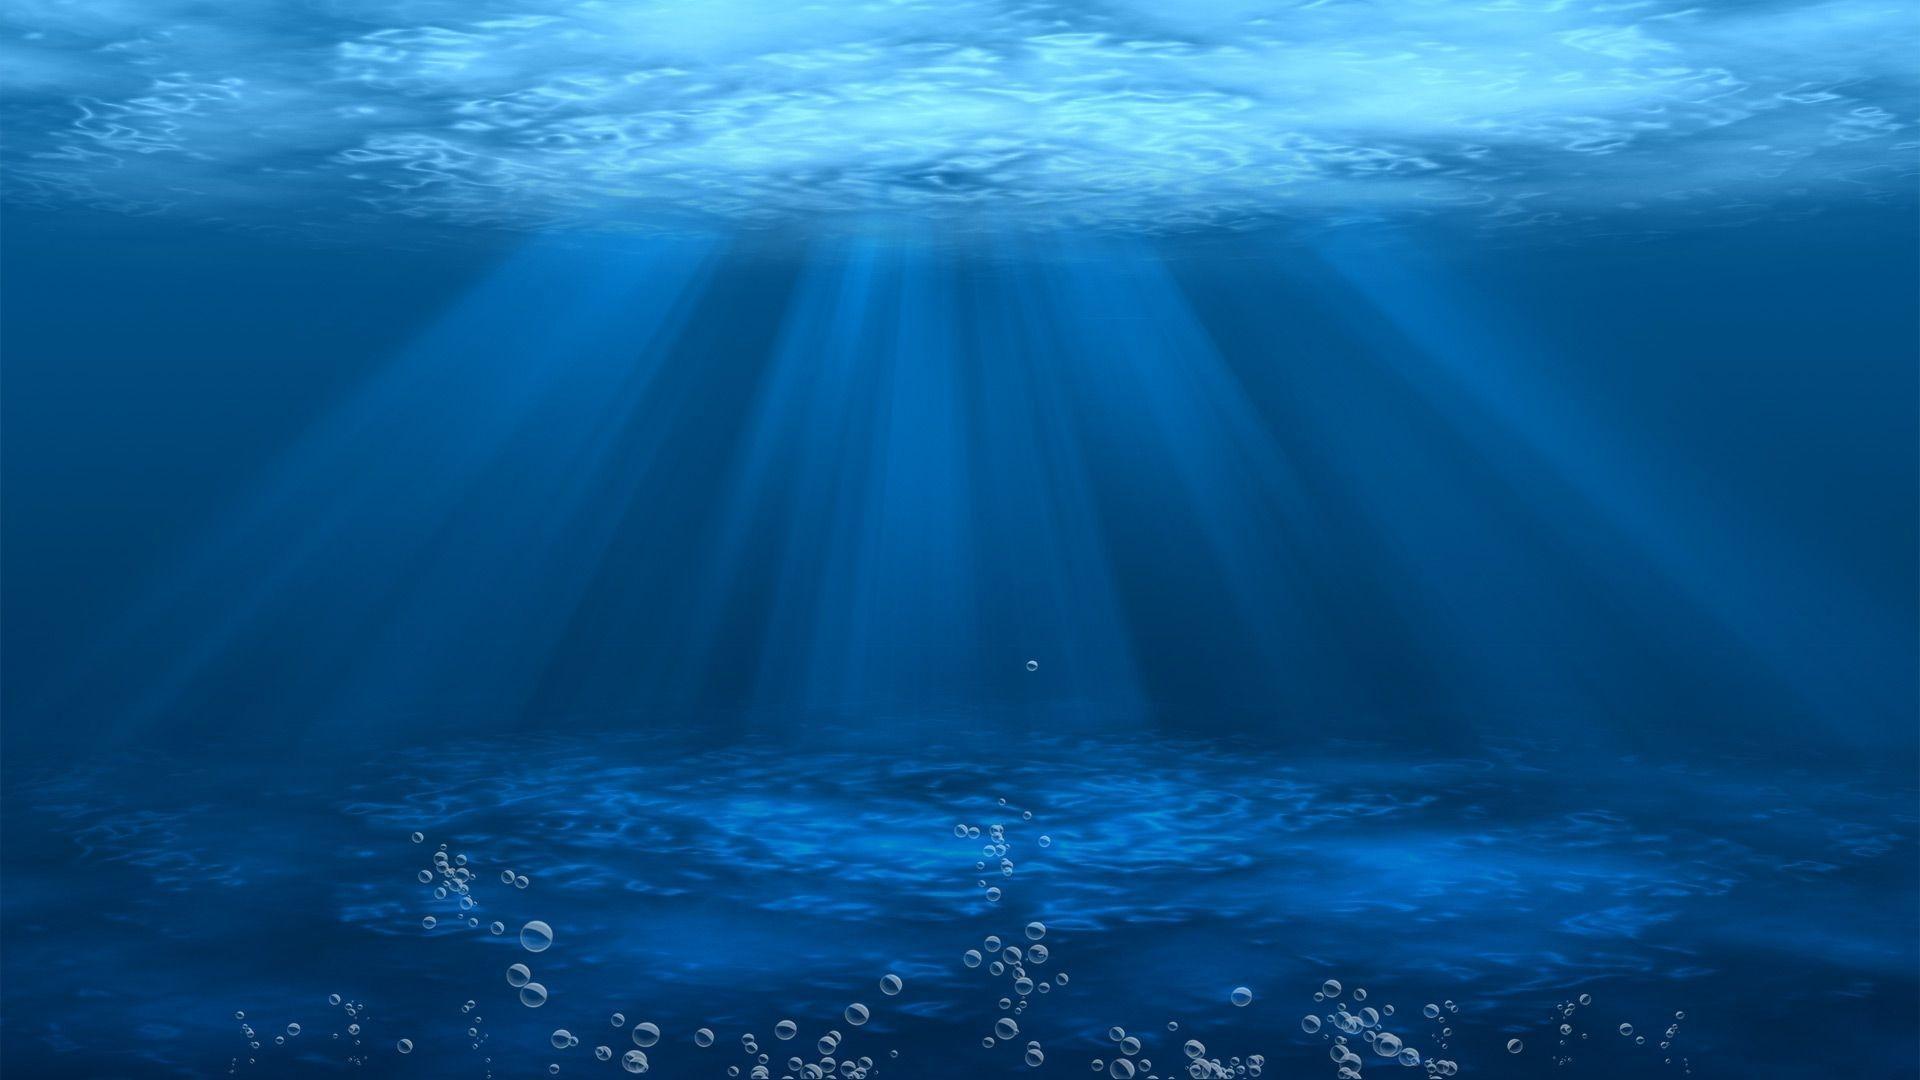 Hình nền máy tính dưới nước là sự kết hợp tuyệt vời của những cảnh quan của đại dương và kỹ thuật số. Với những hình ảnh tuyệt đẹp, bạn sẽ cảm thấy như đang ngâm mình trong một rạn san hô đầy màu sắc hoặc dưới đáy biển tĩnh lặng. Đây là cách tuyệt vời để tận hưởng hình ảnh địa điểm yêu thích của bạn và giúp bạn thư giãn hiệu quả mỗi khi ngồi trước máy tính.